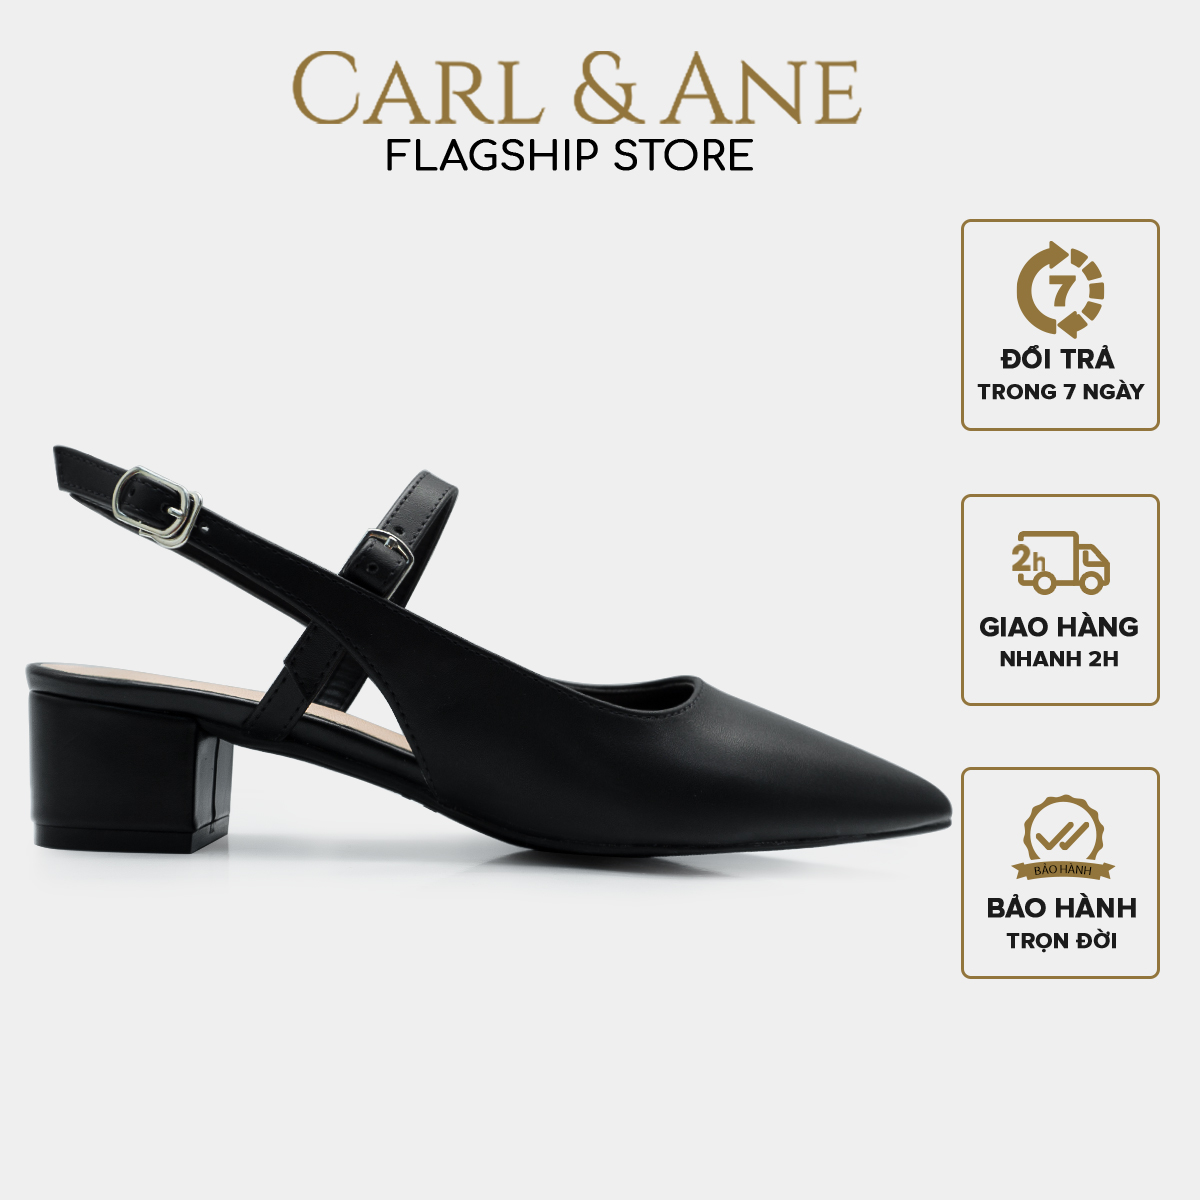 [CHỈ 18/12 0H-12H - MUA 3 GIẢM 20%] Carl & Ane - Giày cao gót mũi nhọn kiểu dáng thanh lịch cao 3,5cm màu nude - CL023